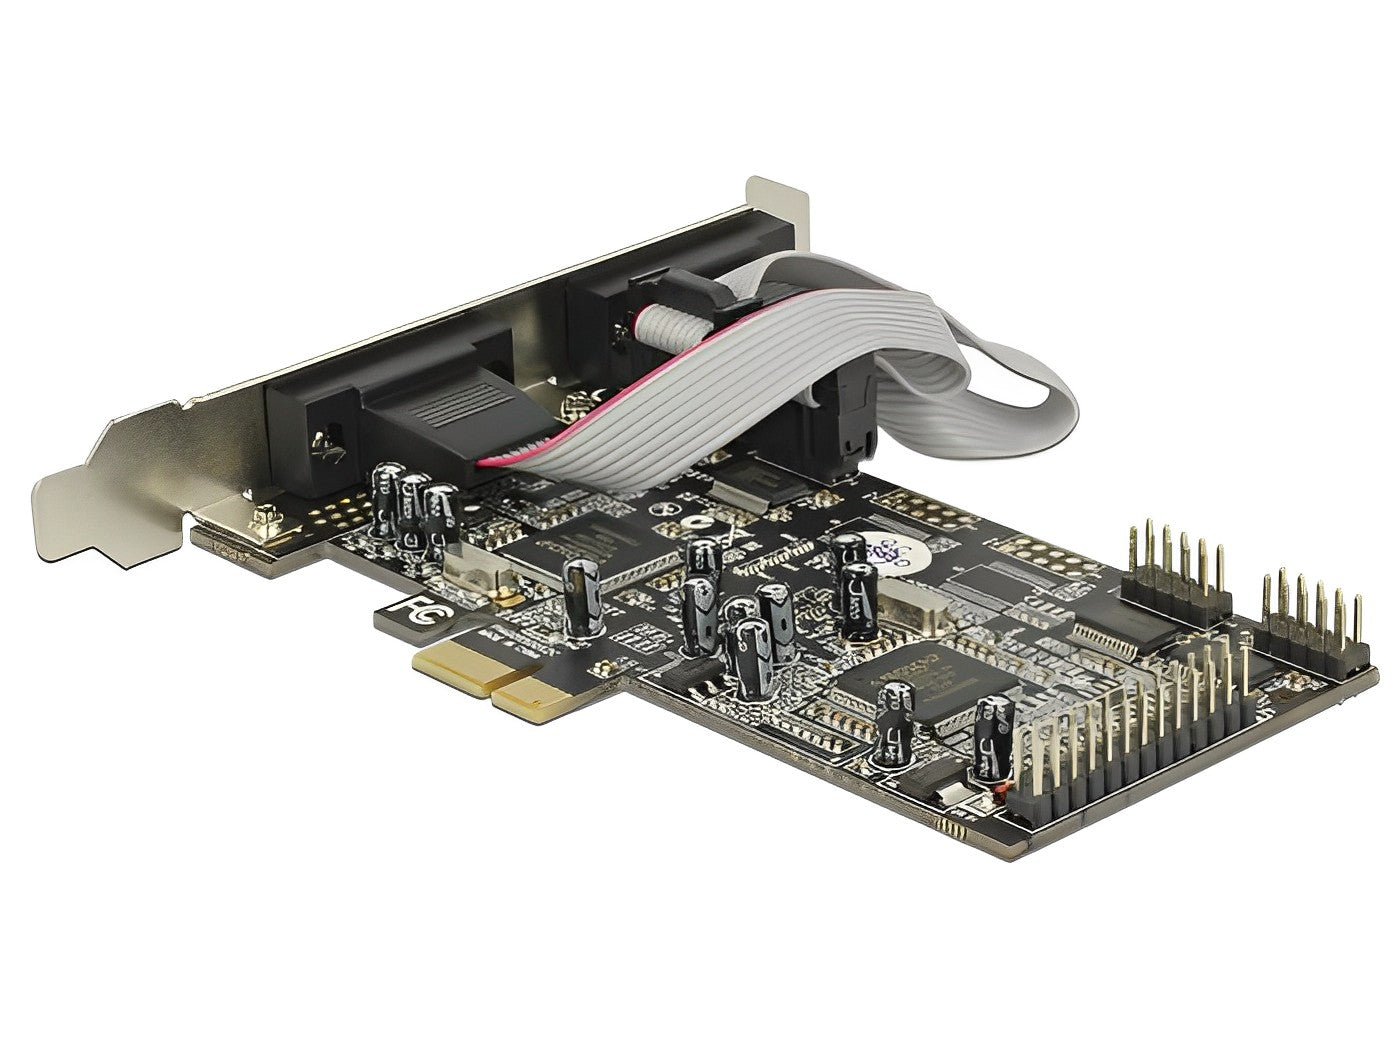 כרטיס PCIe x1 Serial RS-232 Low profile עם 4 יציאות DB9 + יציאת Parallel צ'יפ Moschip - delock.israel